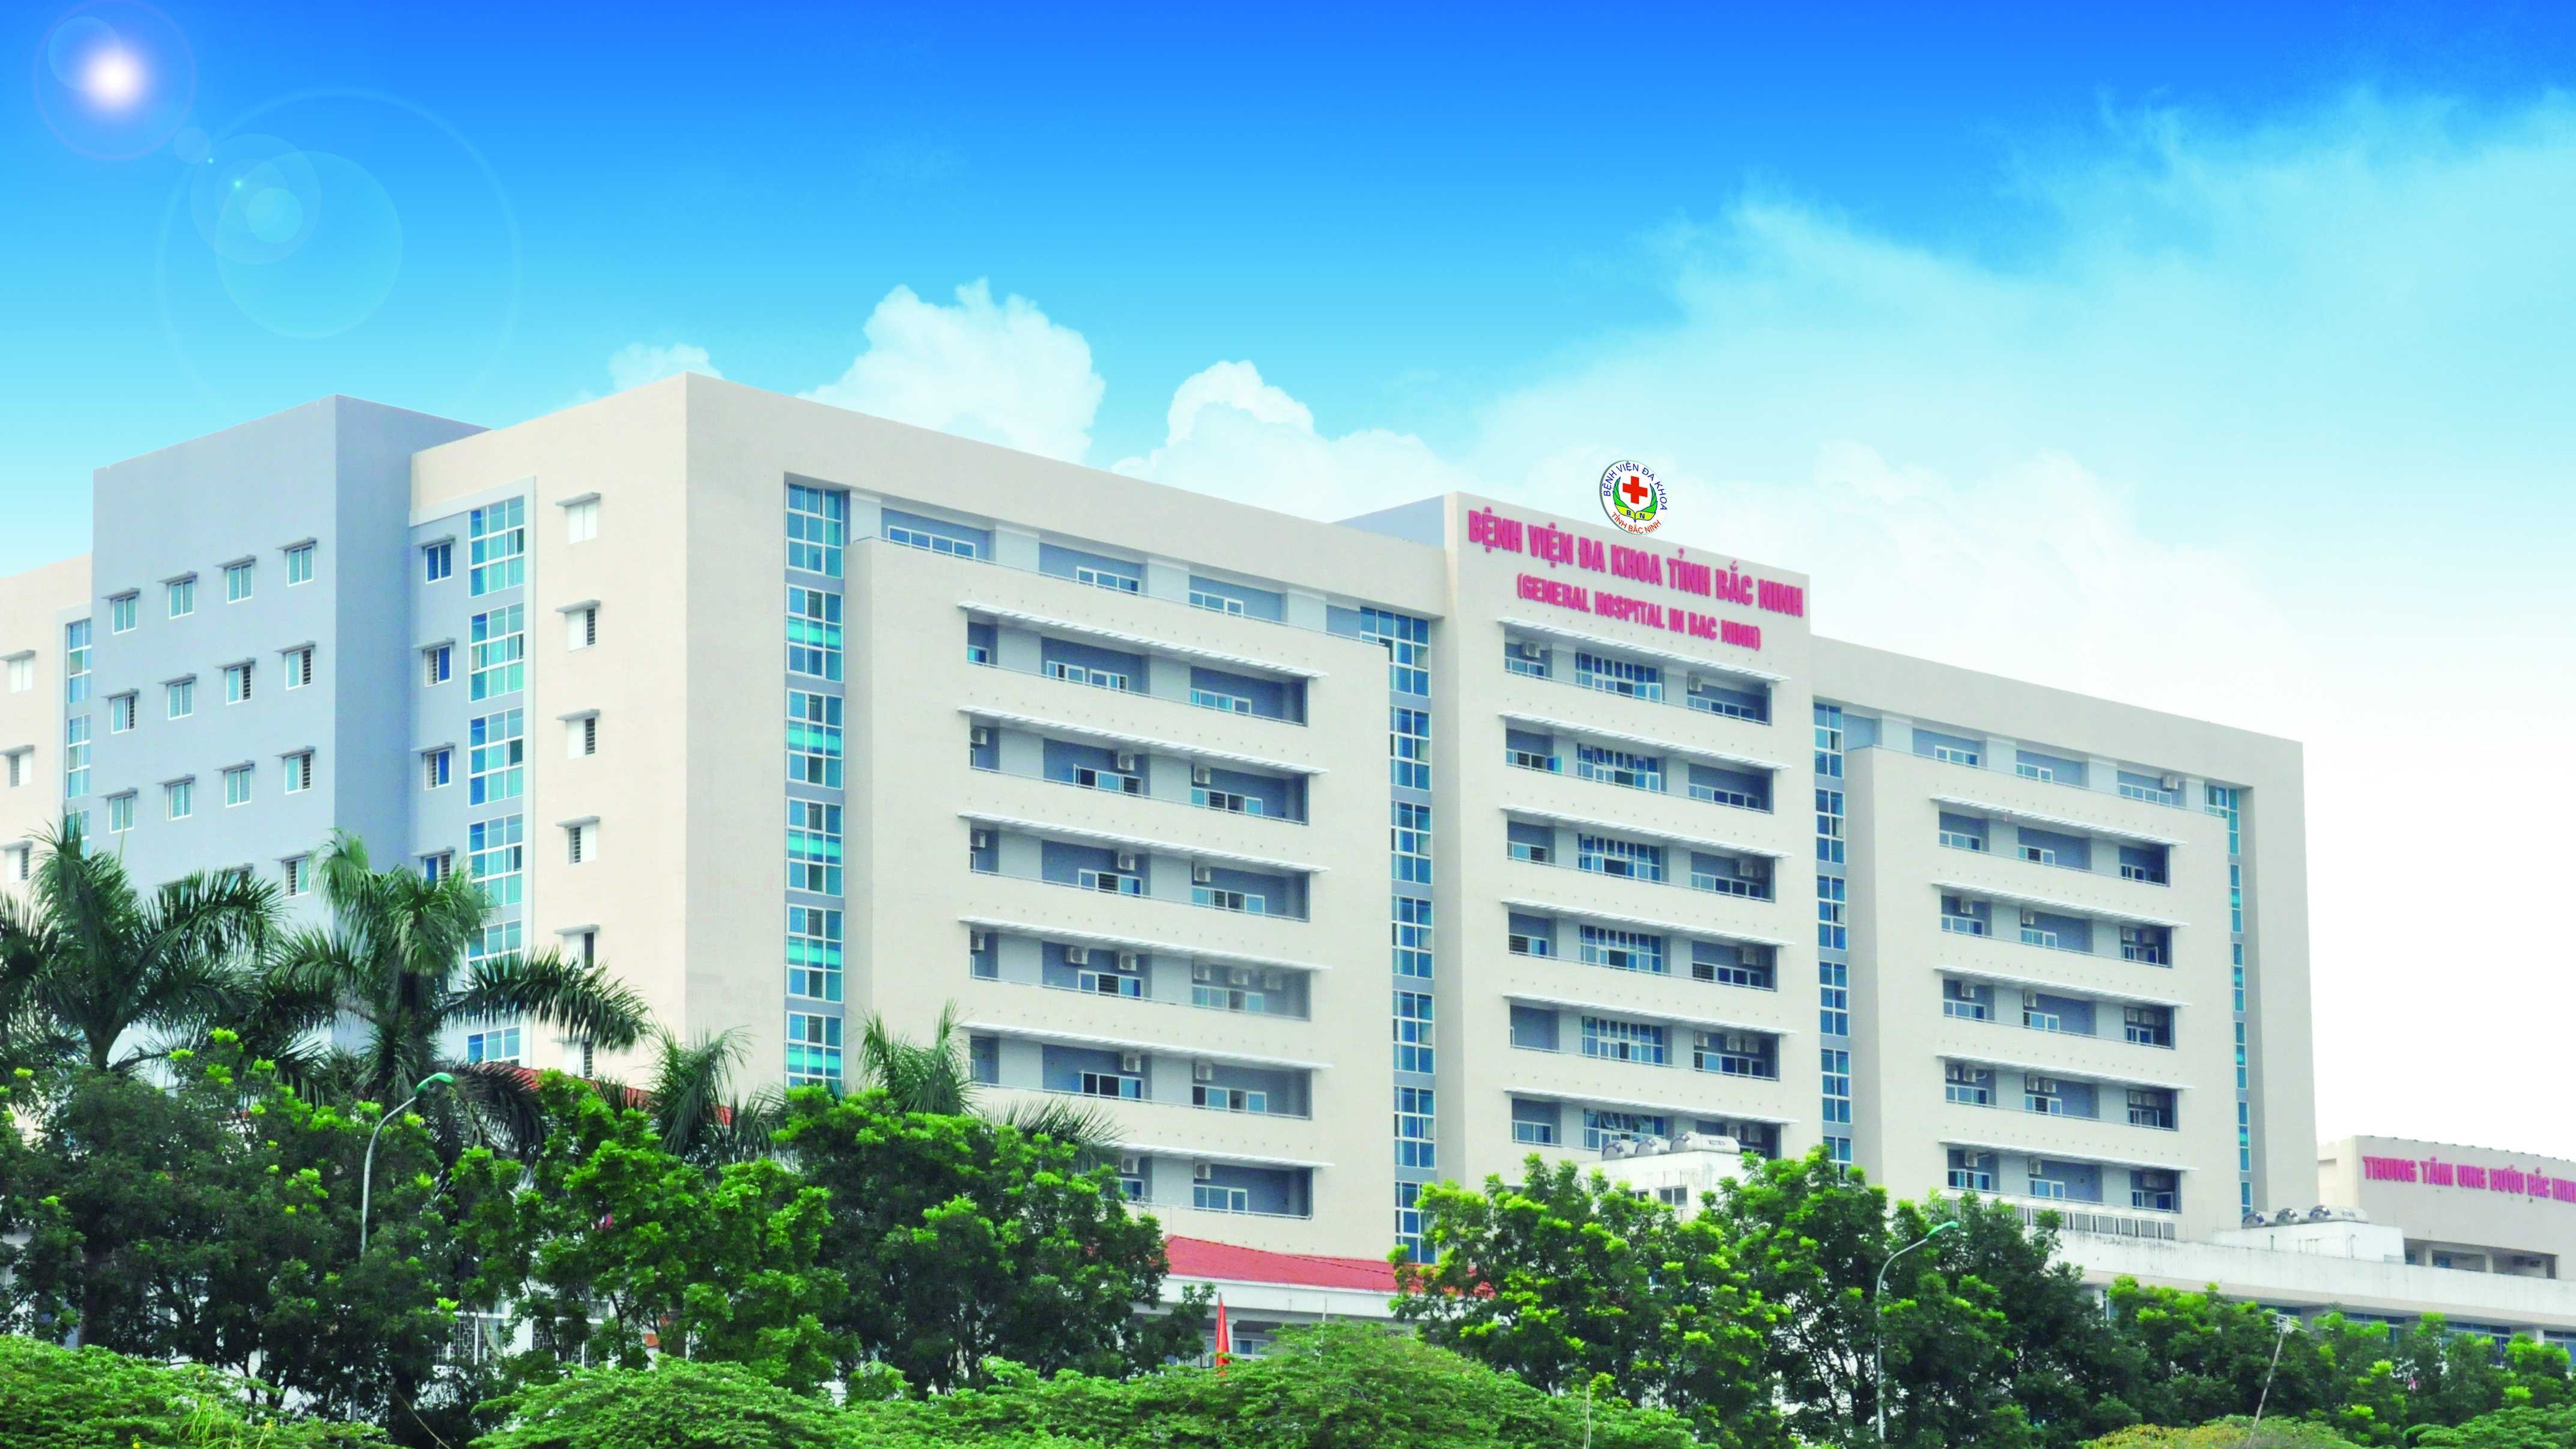 Một số thông tin cơ bản về bệnh viện Đa khoa tỉnh Bắc Ninh - Nhà thuốc FPT  Long Châu